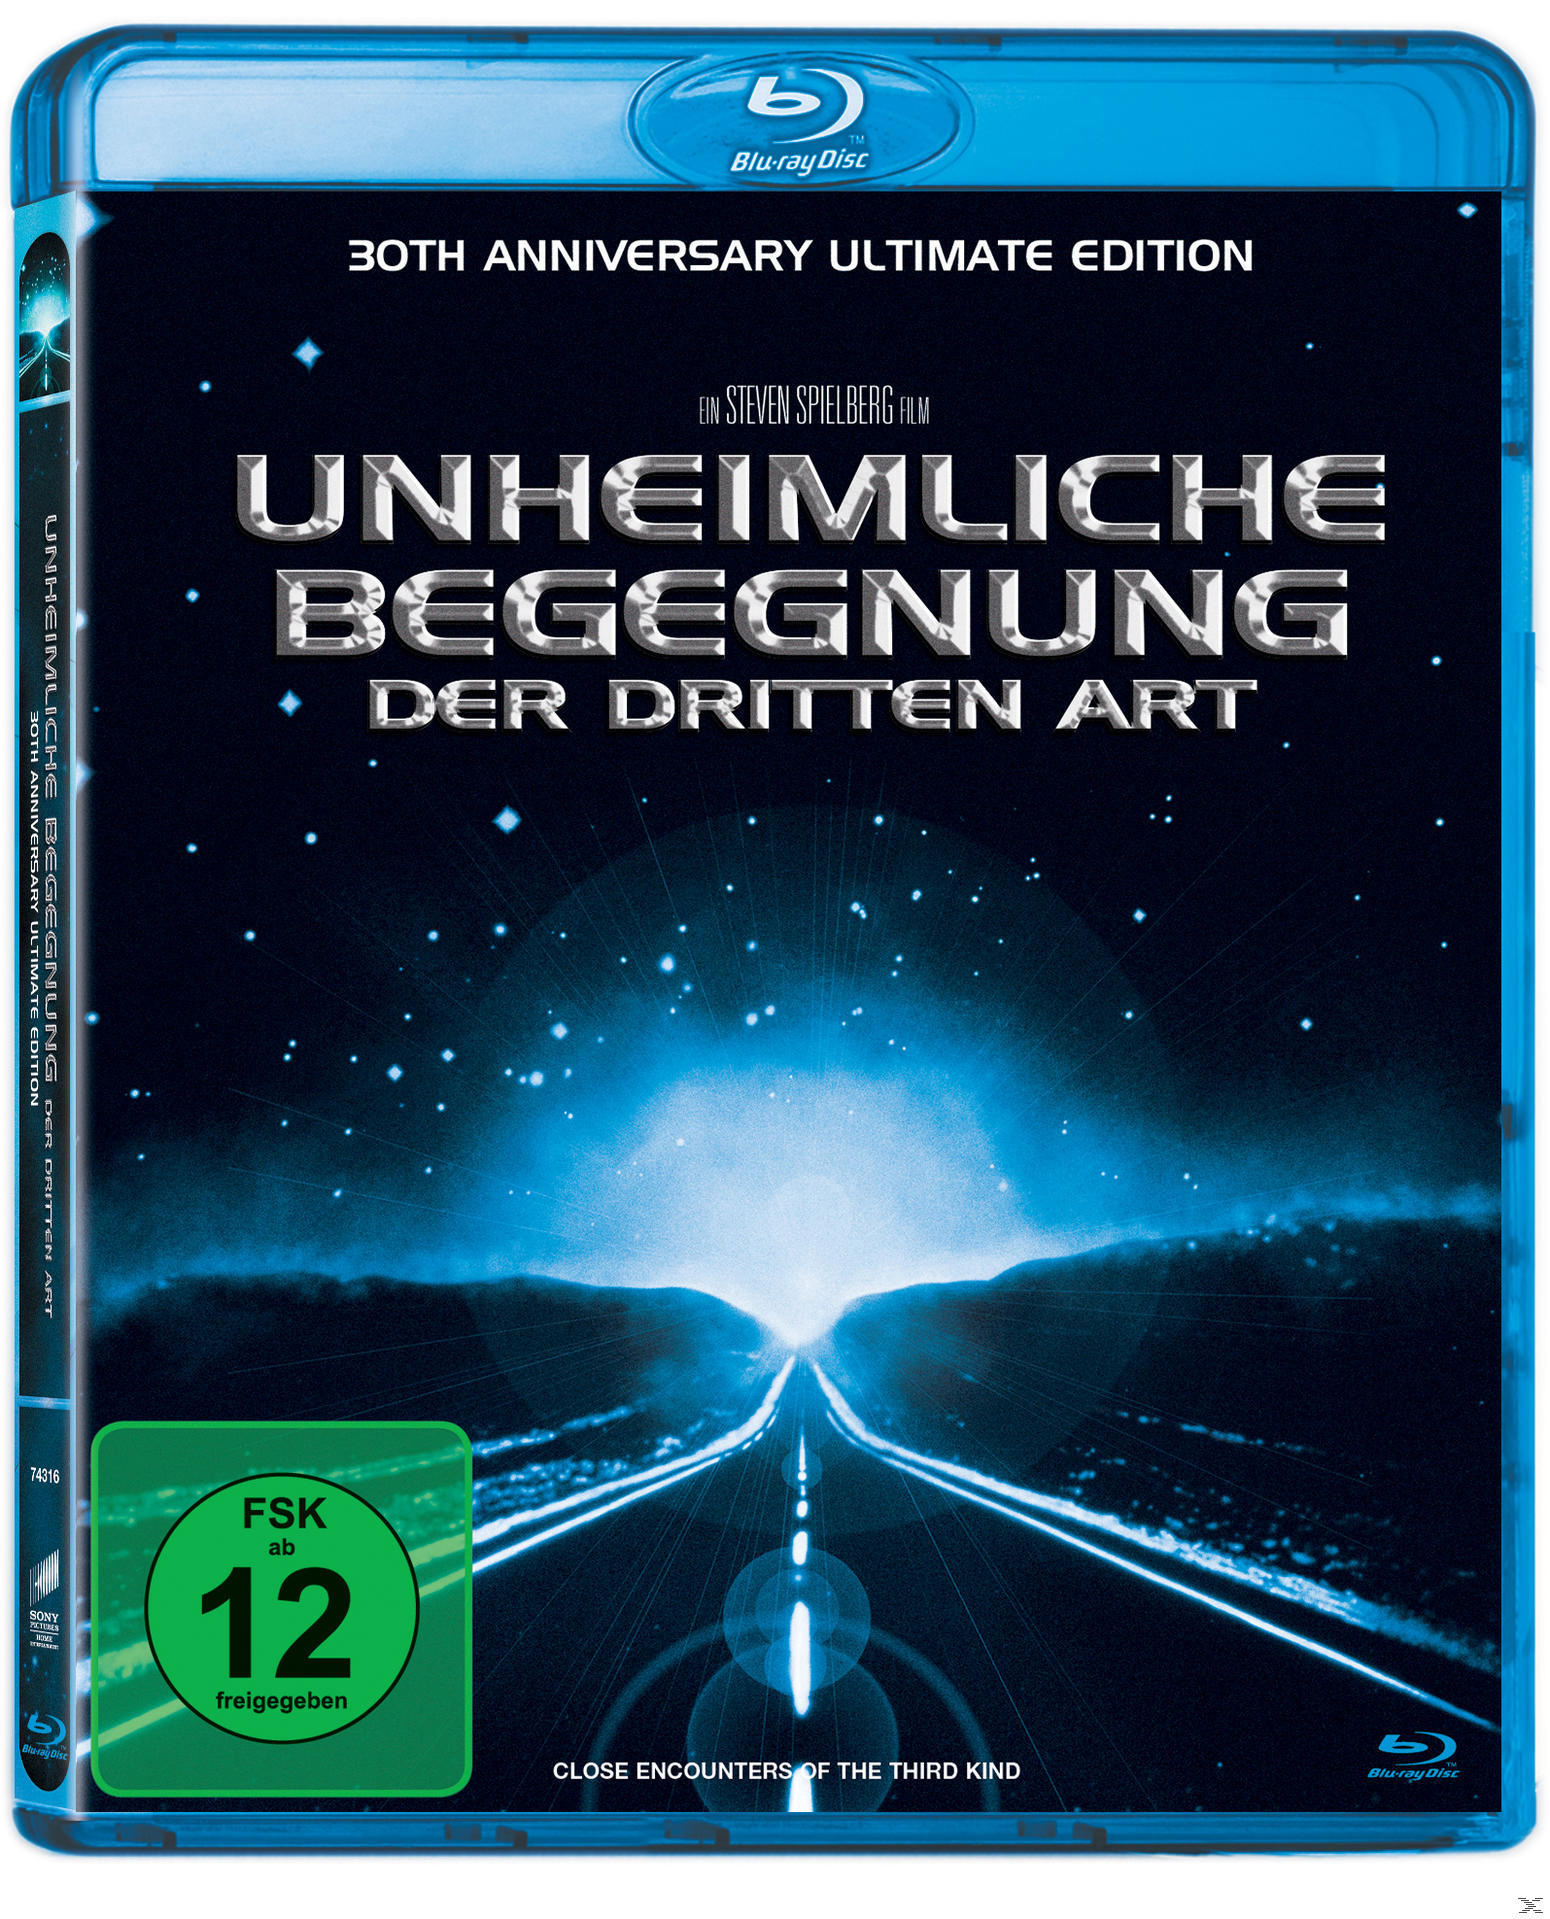 Blu-ray dritten Art der Edition) Begegnung Ultimate Unheimliche Anniversary (30th